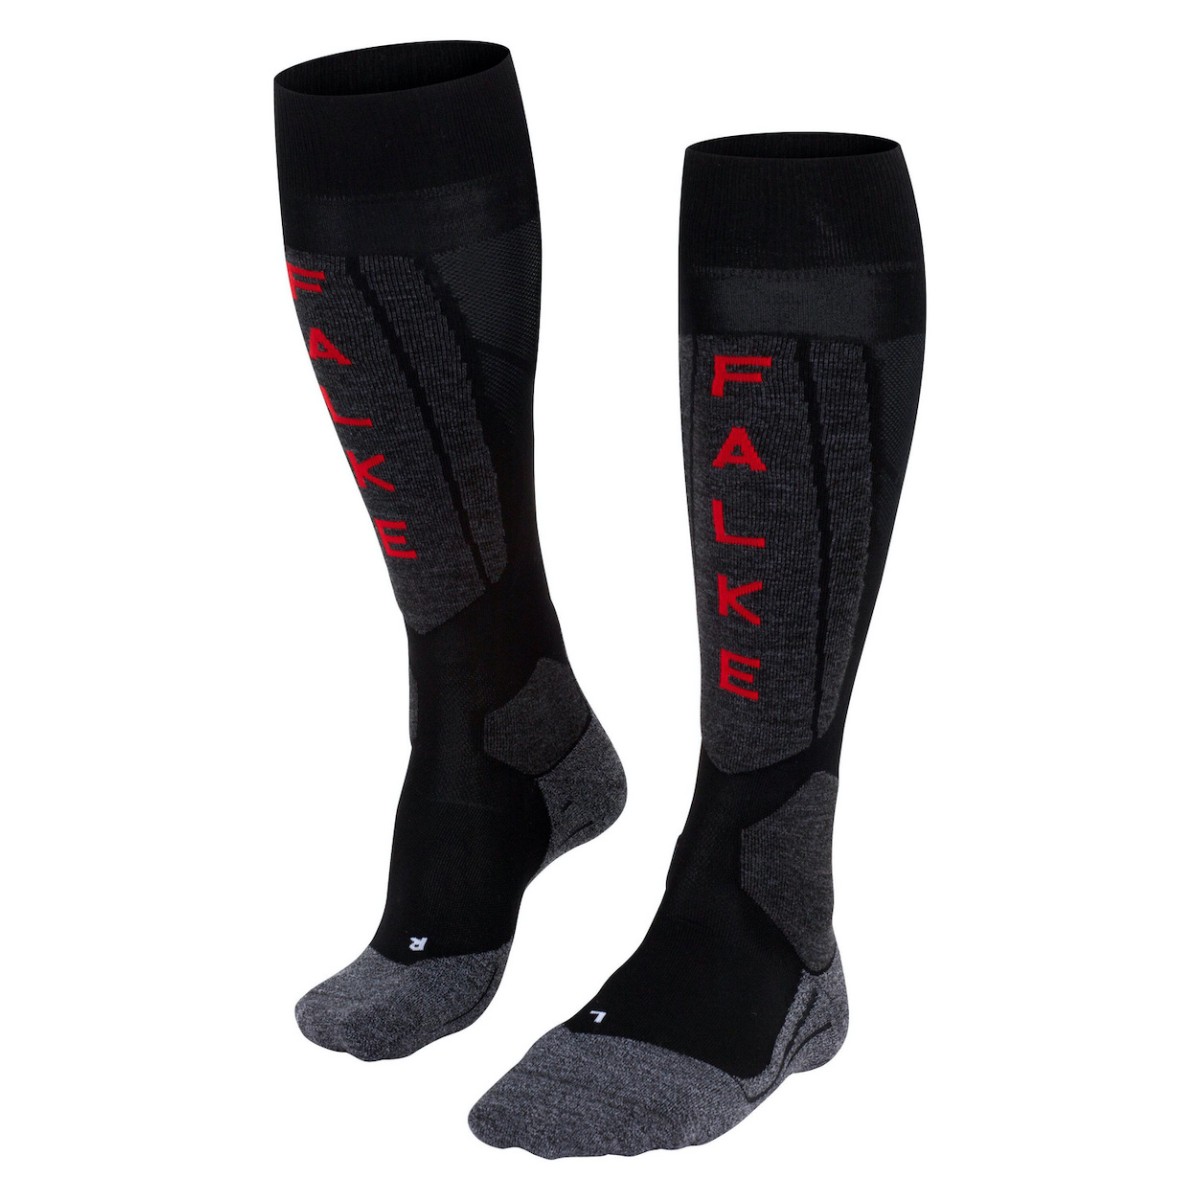 FALKE SK5 SILK WOMEN socks - black/grey/red